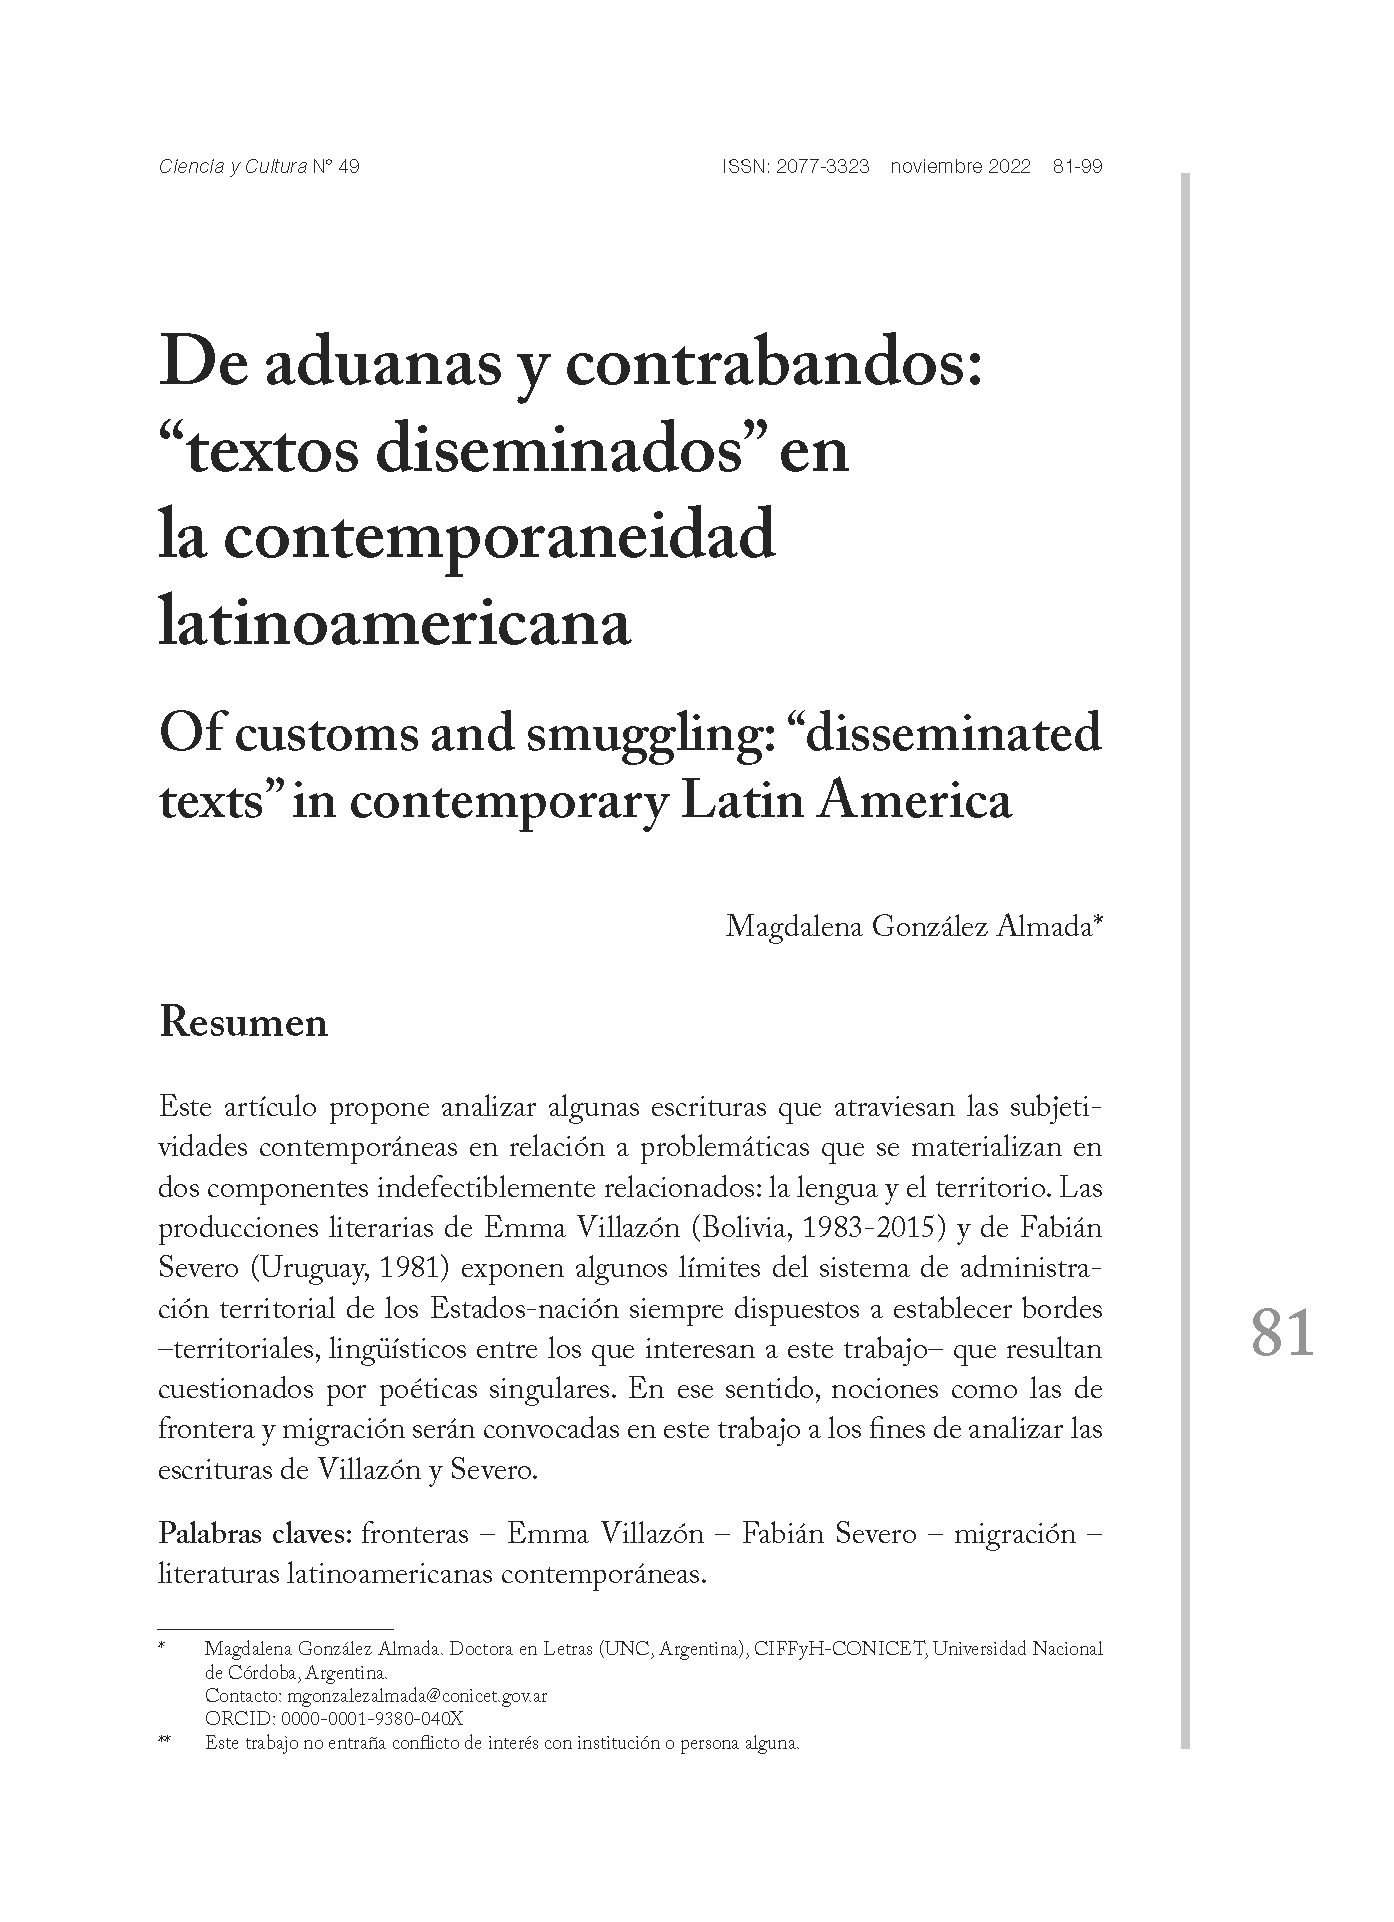 De aduanas y contrabandos: “textos diseminados” en la contemporaneidad latinoamericana